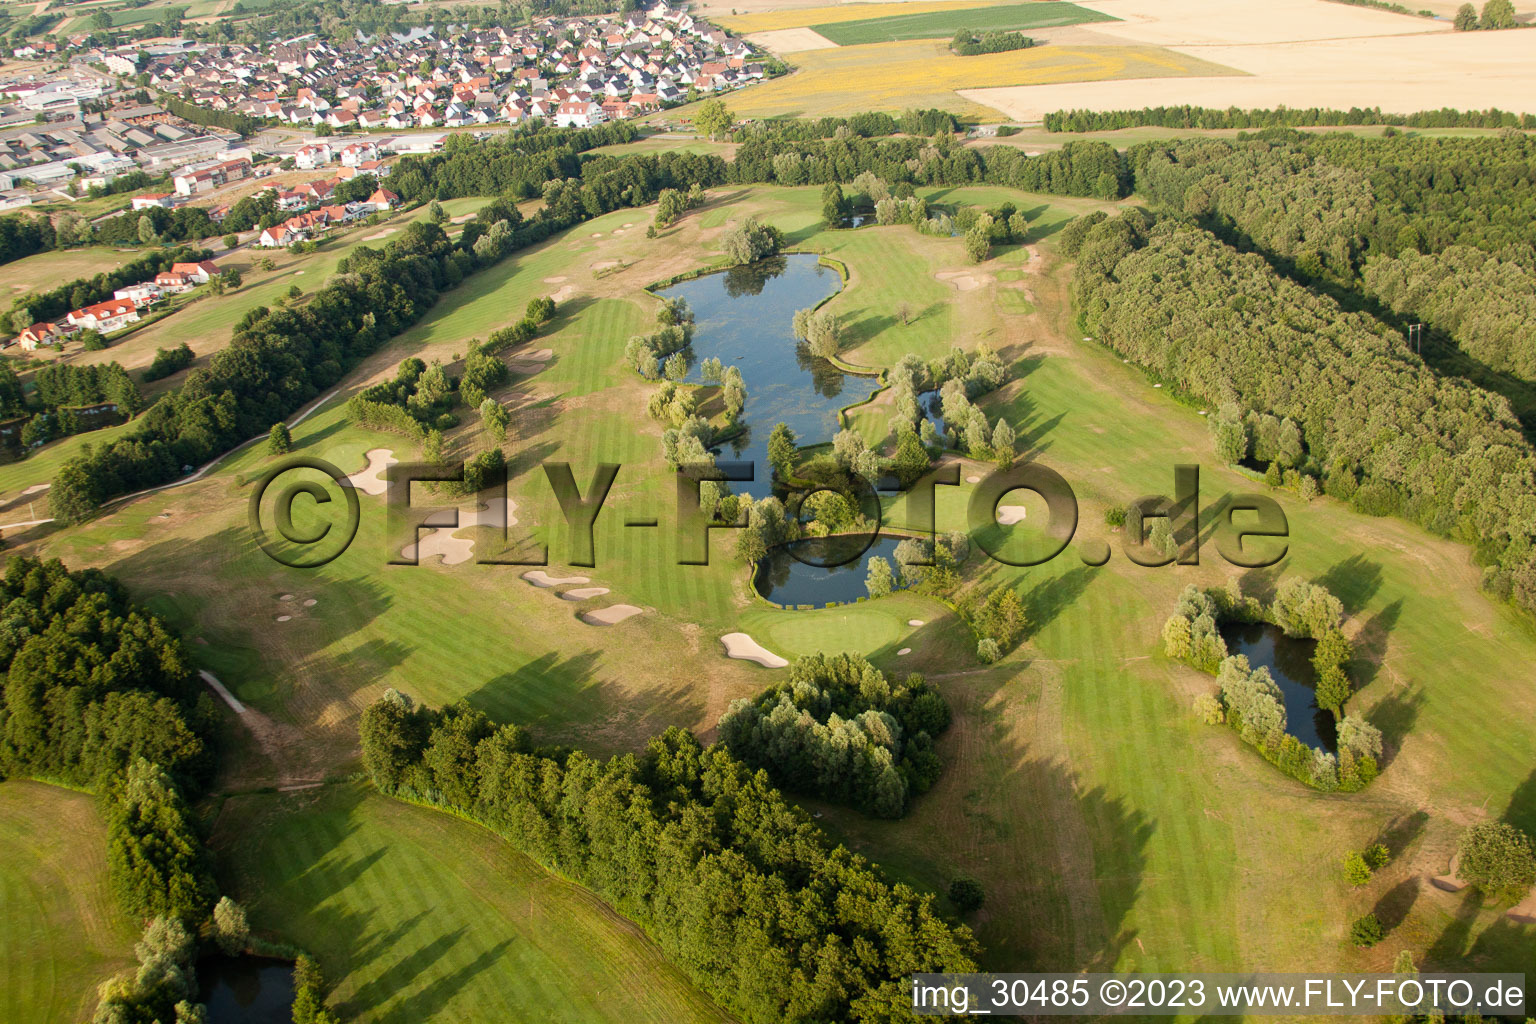 Club de golf Soufflenheim Baden-Baden à Soufflenheim dans le département Bas Rhin, France d'un drone